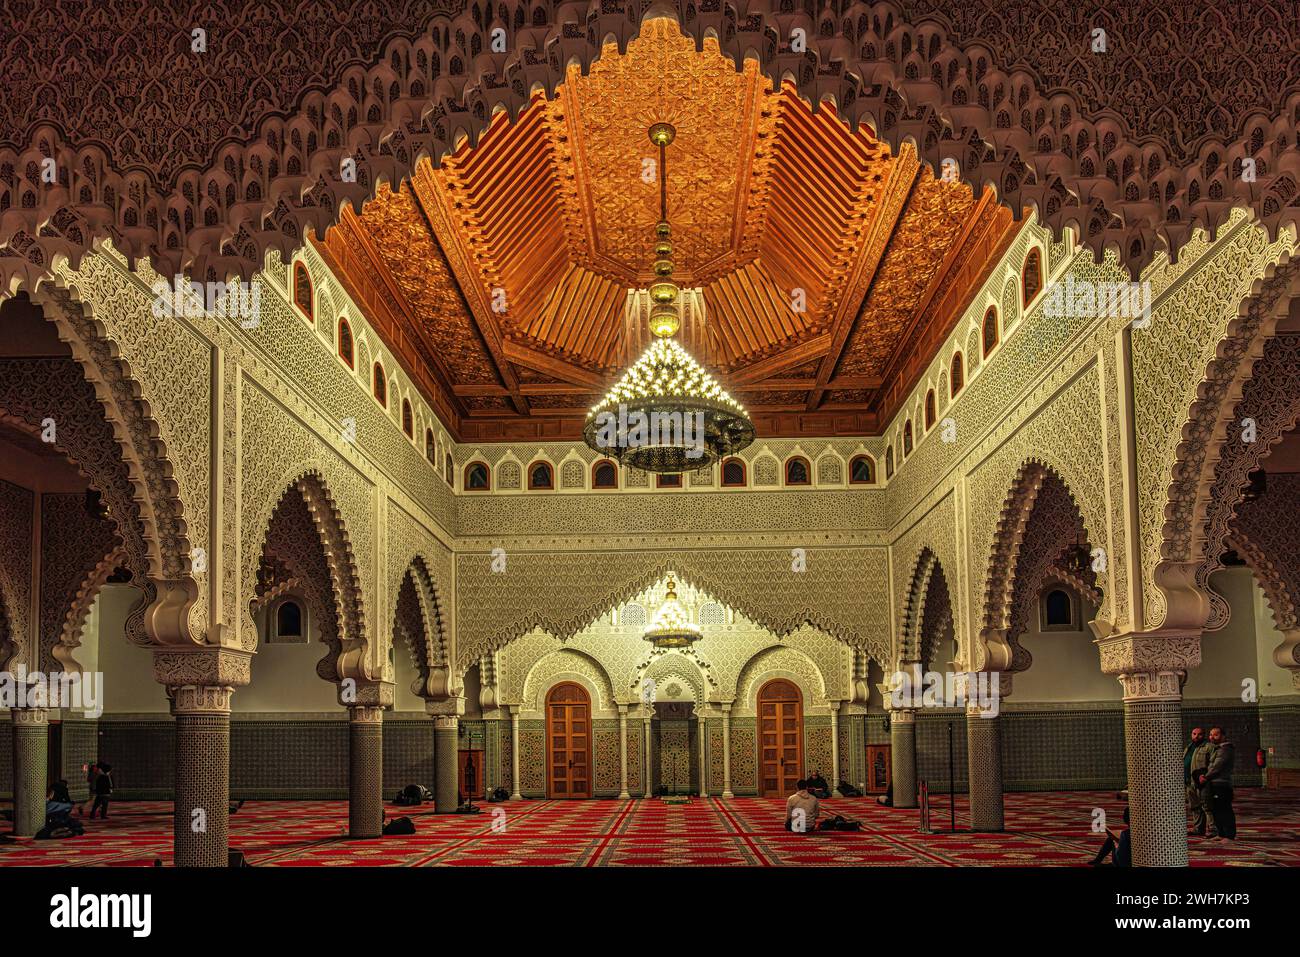 Reich dekorierte Inneneinrichtung, Juwel der hispaanisch-maurischen Kunst der Mohammed VI. Großen Moschee in Saint Etienne. Saint Etienne, Departement Loire, Frankreich Stockfoto